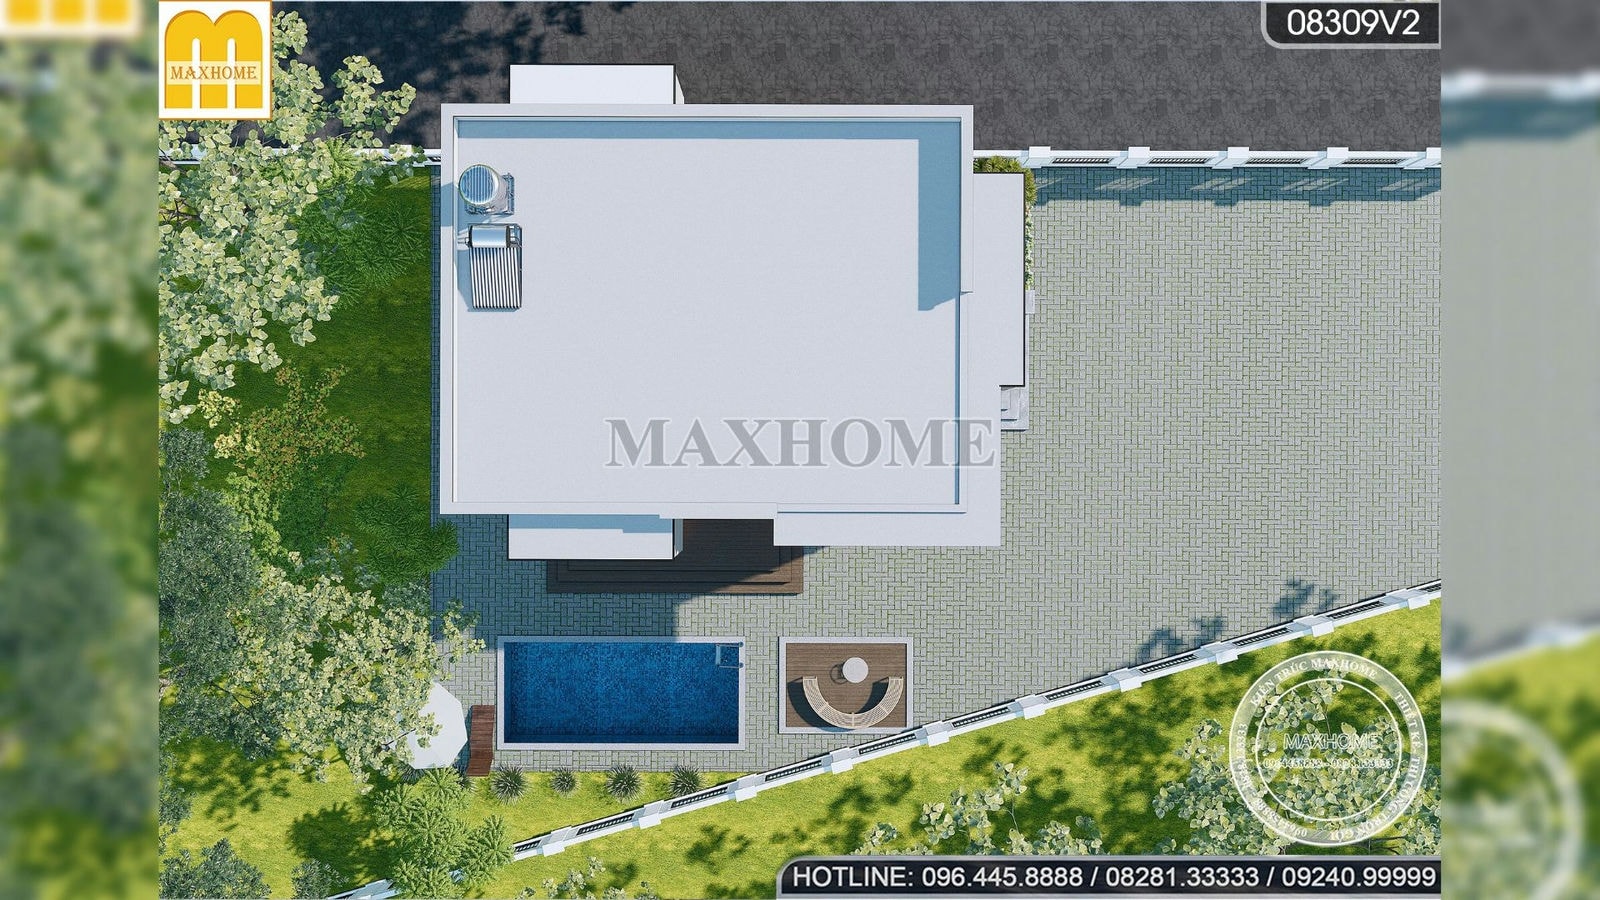 Căn nhà hiện đại siêu hot trong bộ sưu tập nhà đẹp Maxhome | MH02089